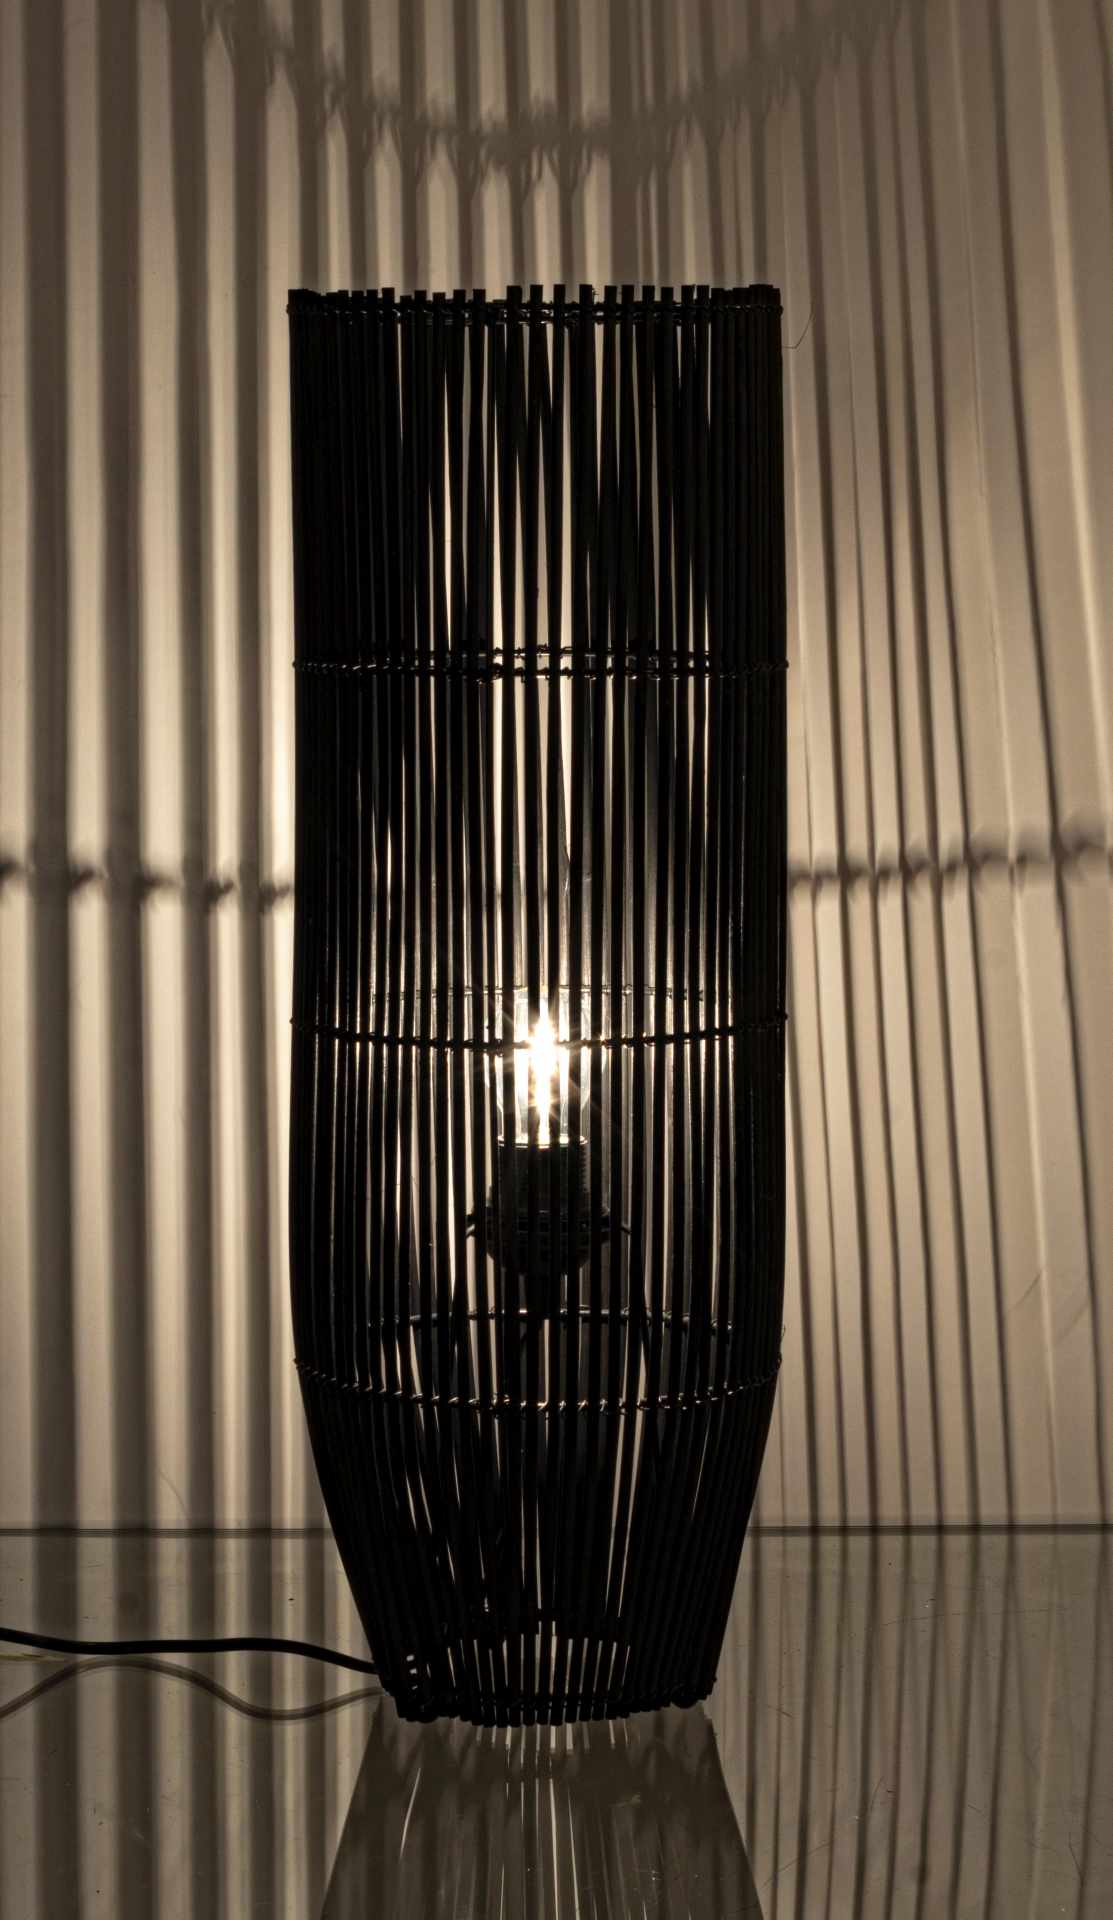 Die Stehleuchte Arusha überzeugt mit ihrem klassischen Design. Gefertigt wurde sie aus Bambus, welches einen schwarzen Farbton besitzt. Die Lampe besitzt eine Höhe von 61 cm.